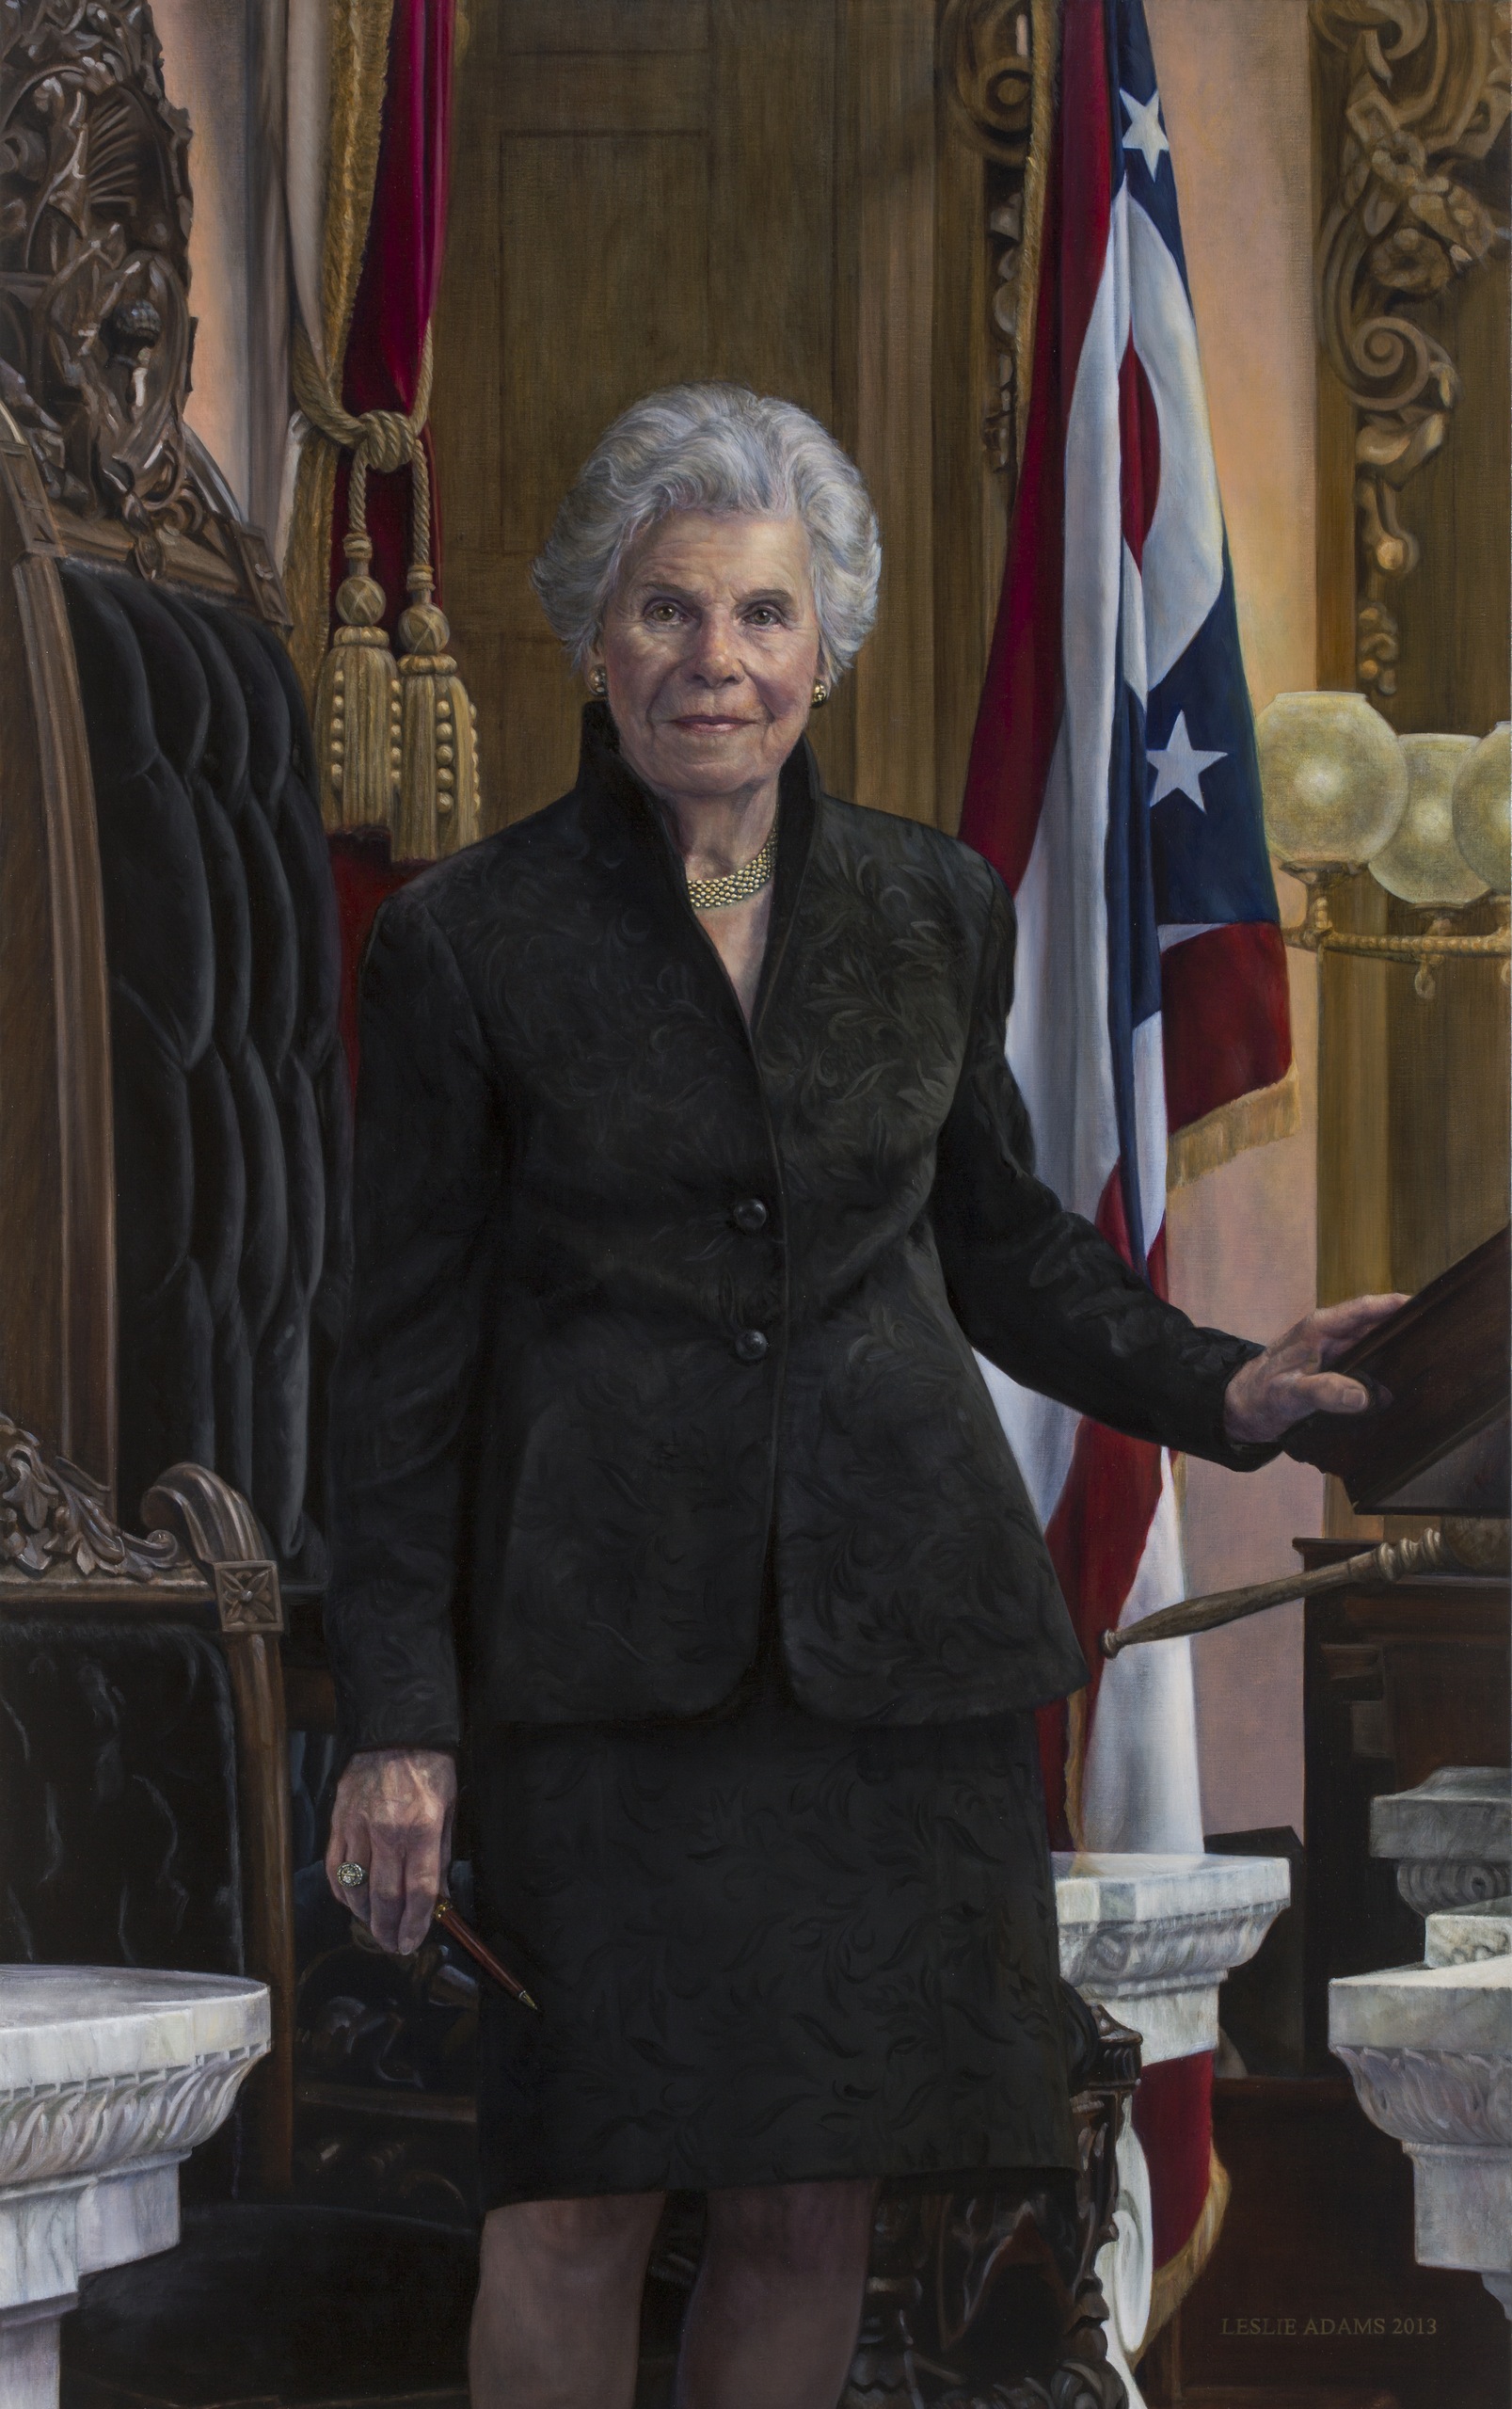 Davidson's official Ohio Statehouse portrait